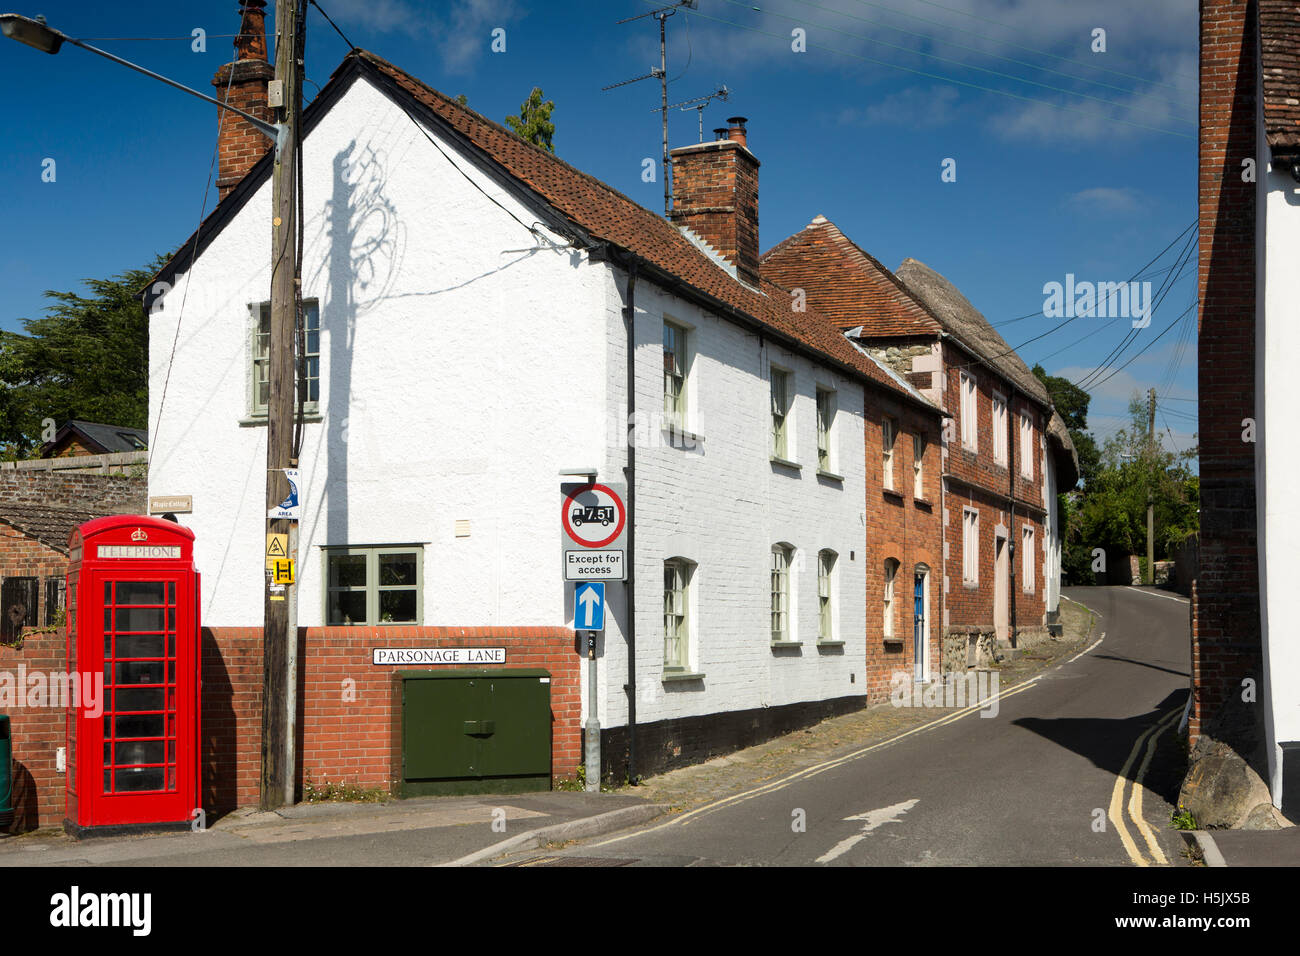 Regno Unito, Inghilterra, Wiltshire, Salisbury Plain, Mercato Lavington, Parsonage Lane, cottage e villaggio casella telefono Foto Stock